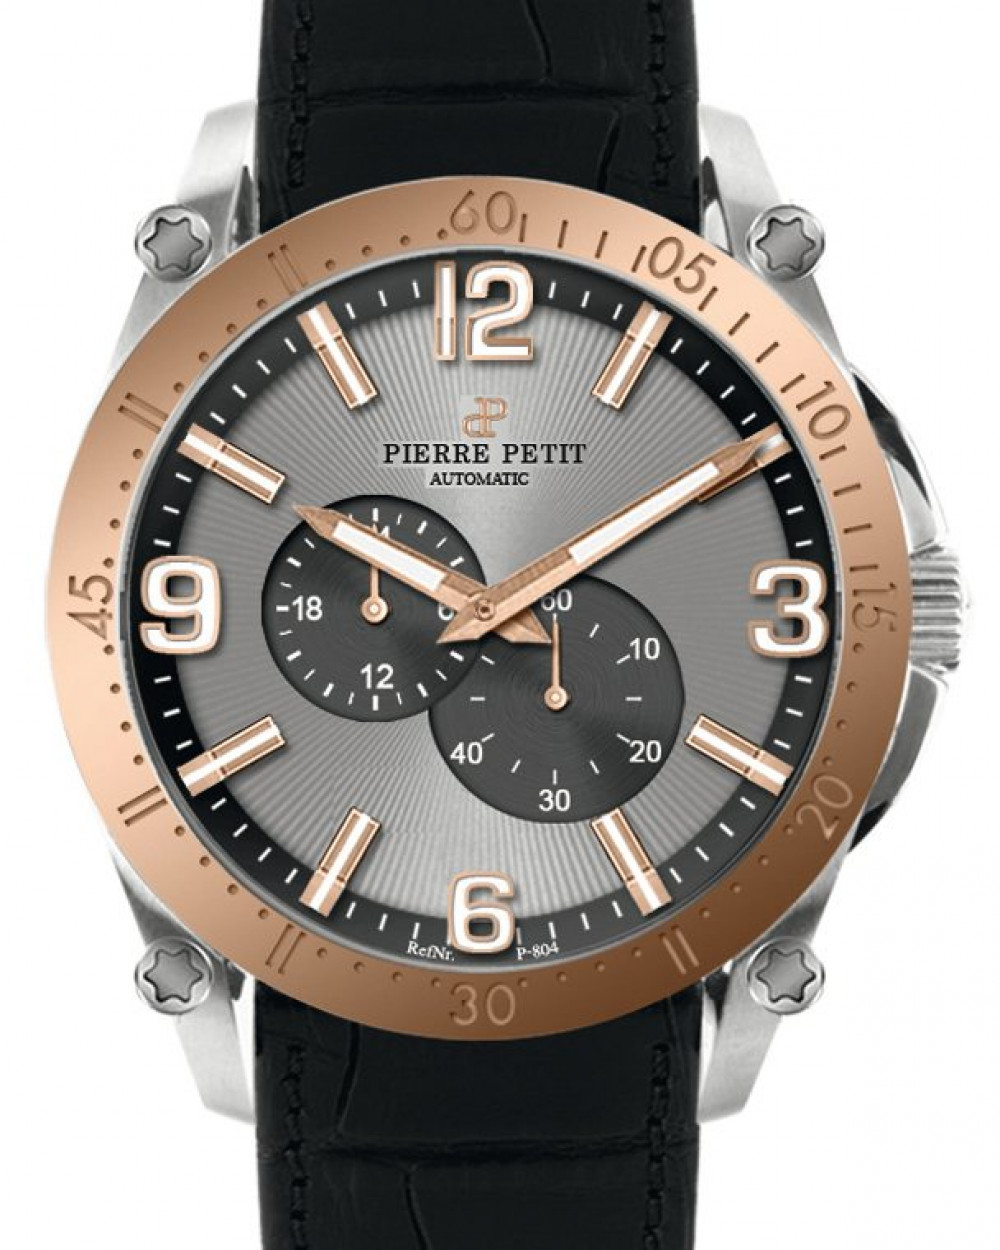 Zegarek firmy Pierre Petit, model Le Mans